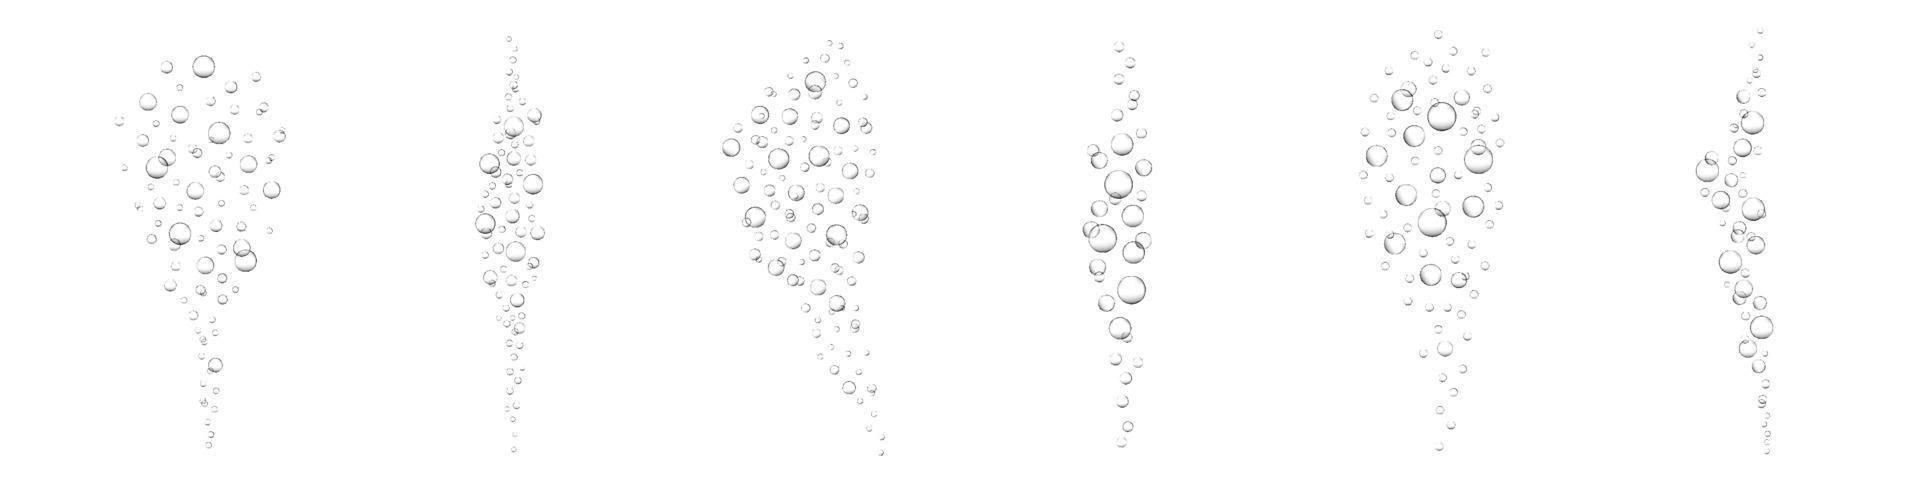 Luftblasen im Wasser. kohlensäurehaltiges Getränk, Soda, Champagner, Limonade, Sekt. Unterwasser-Sauerstoffblasen im Meer oder Aquarium vektor